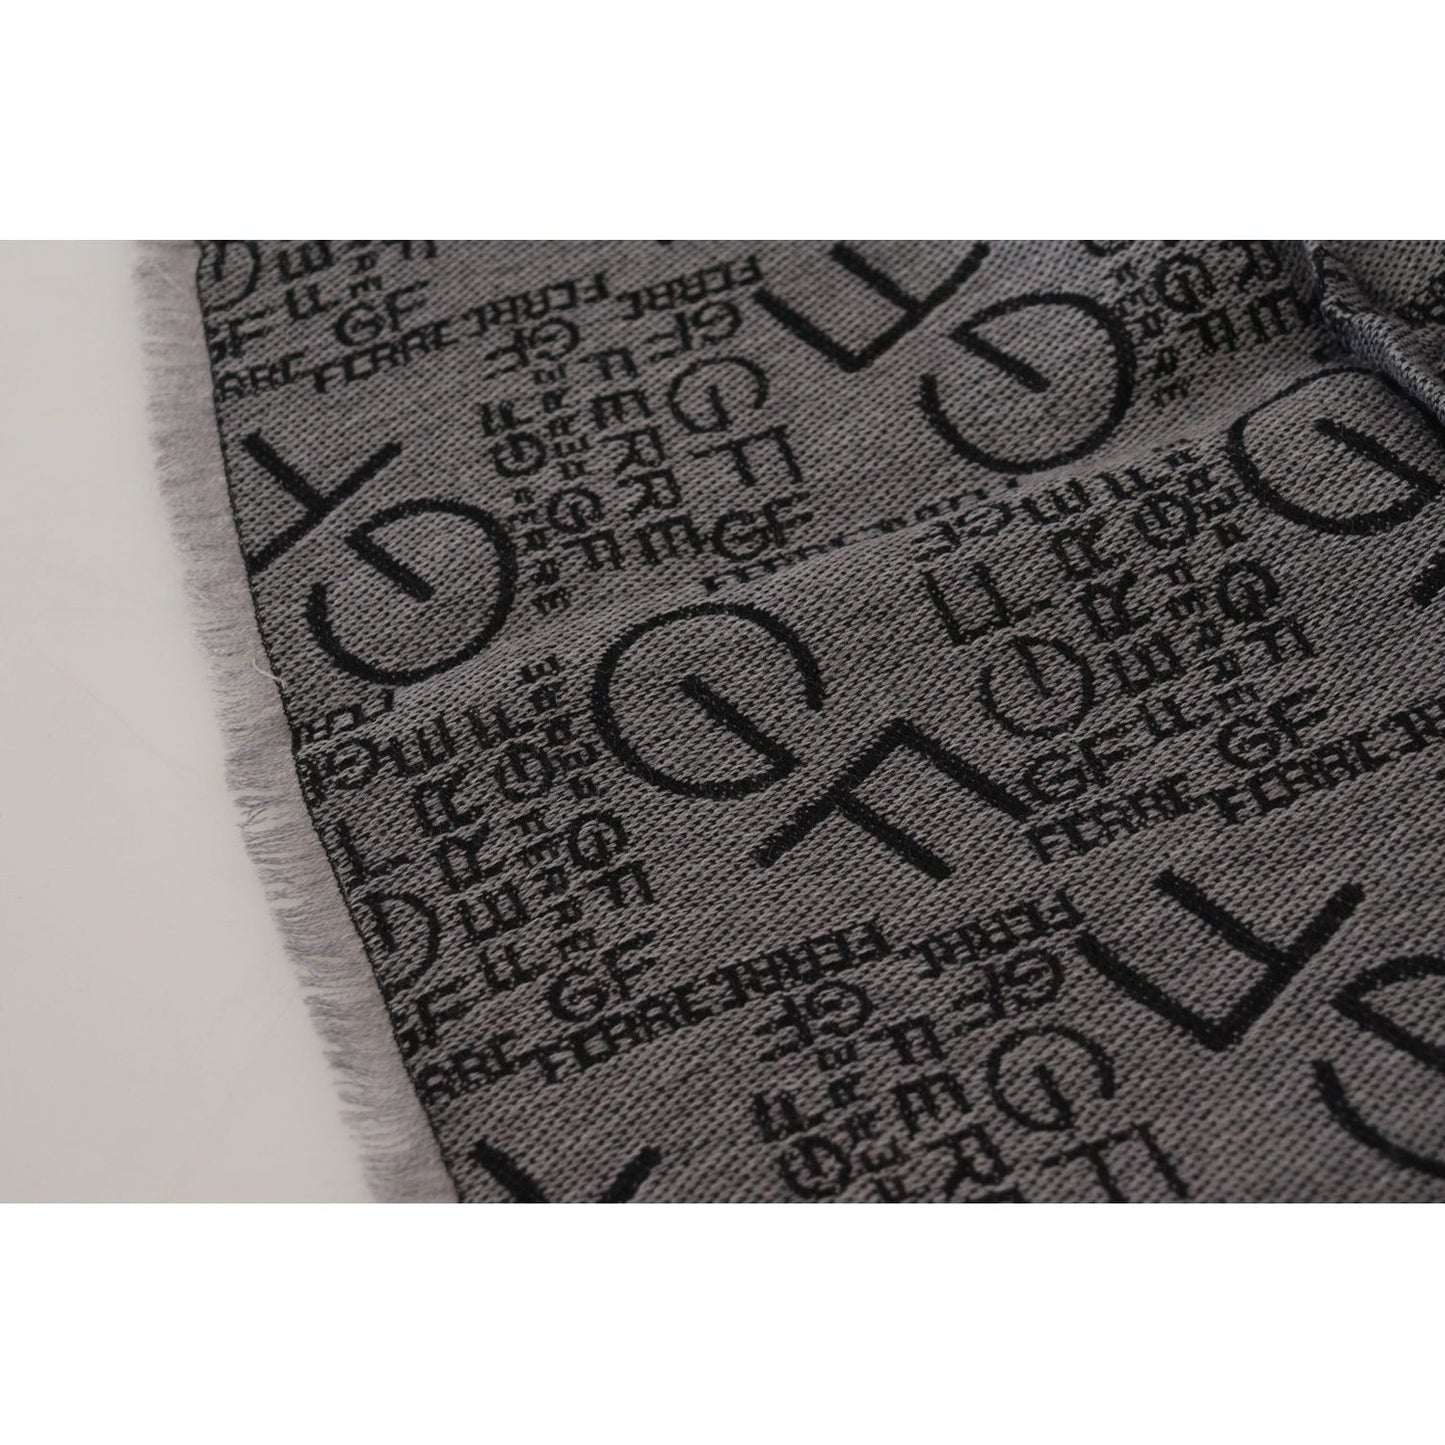 GF Ferre Elegance Unwrapped in a Wool Scarf grey-wool-logo-print-wrap-warmer-shawl-scarf